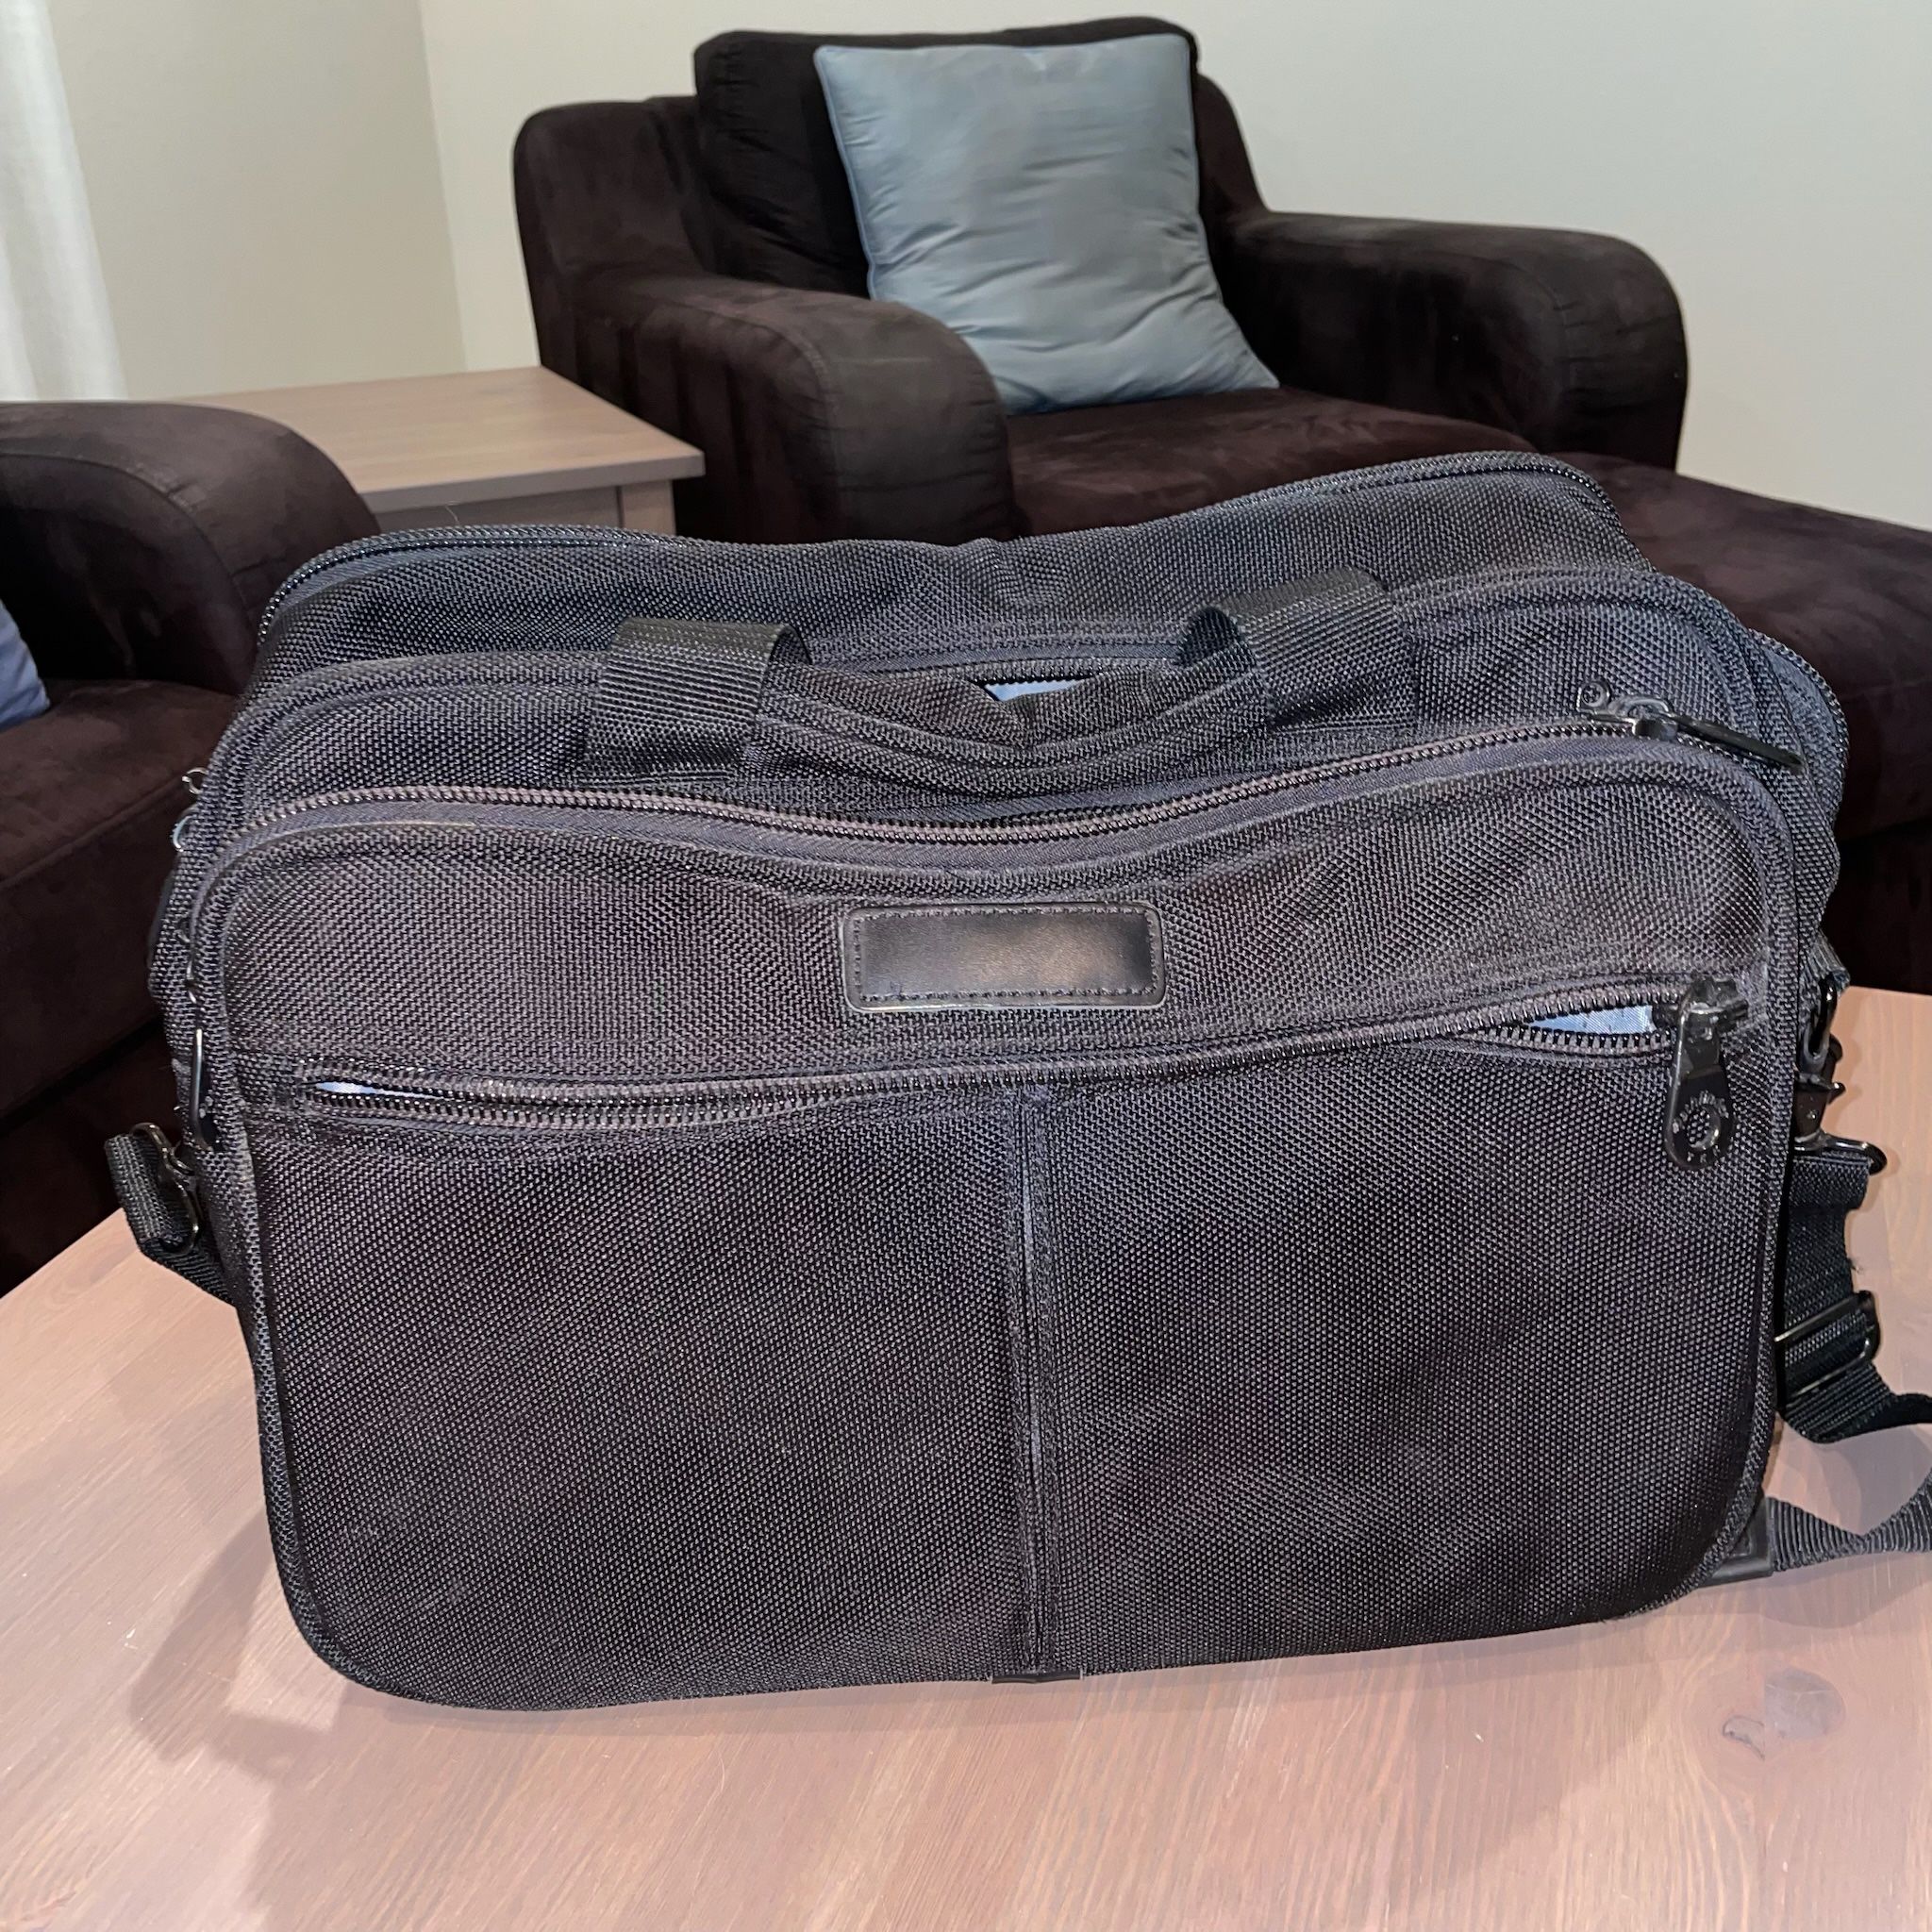 Pathfinder Black Messenger Bag / Briefcase 